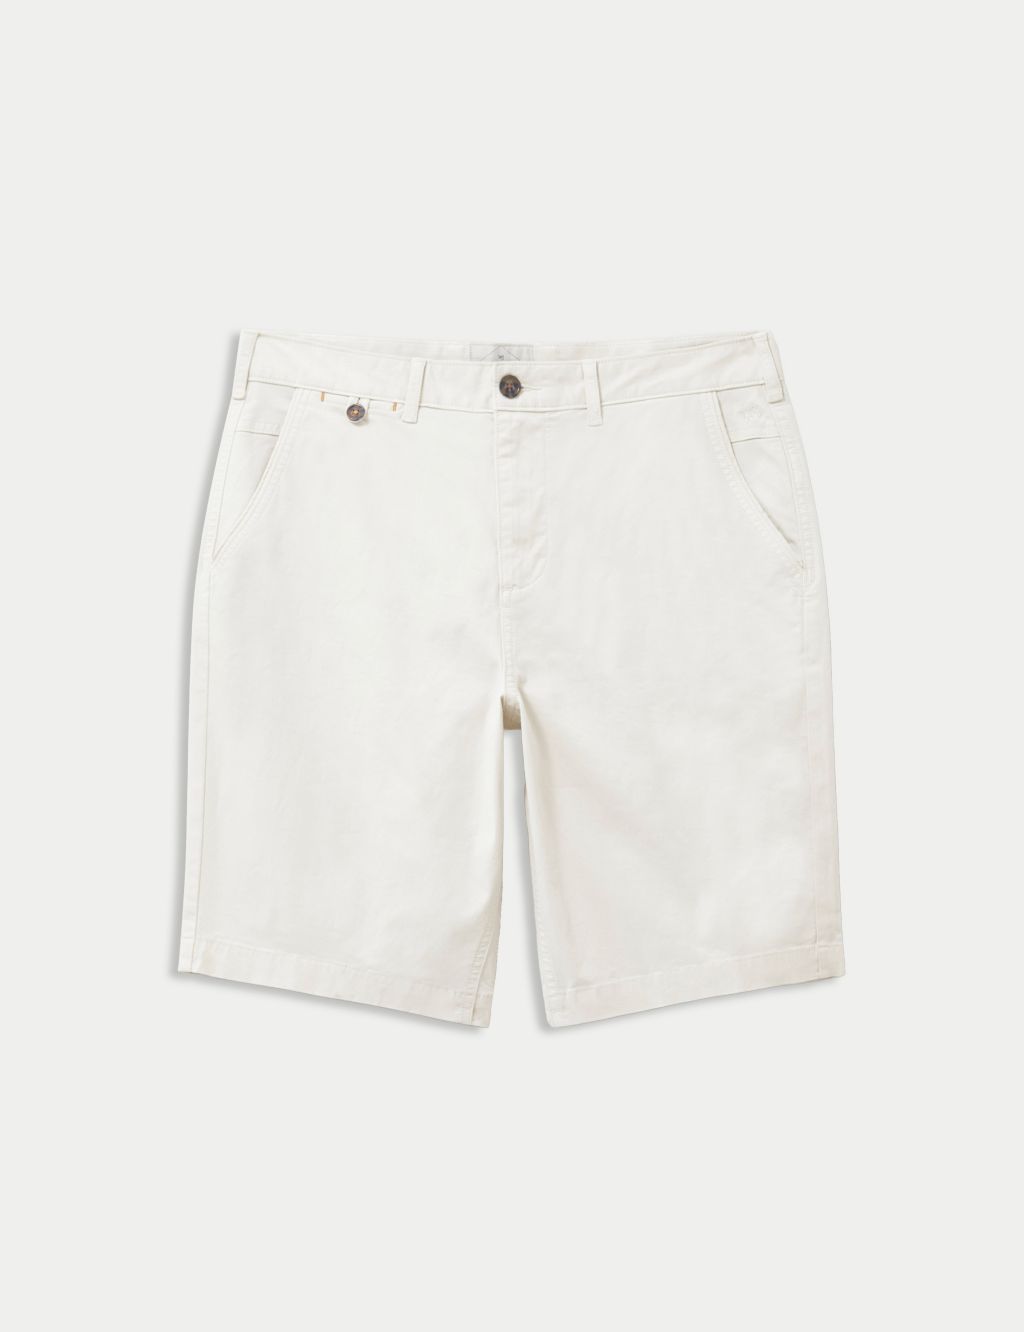 5 Pocket Chino Shorts image 2